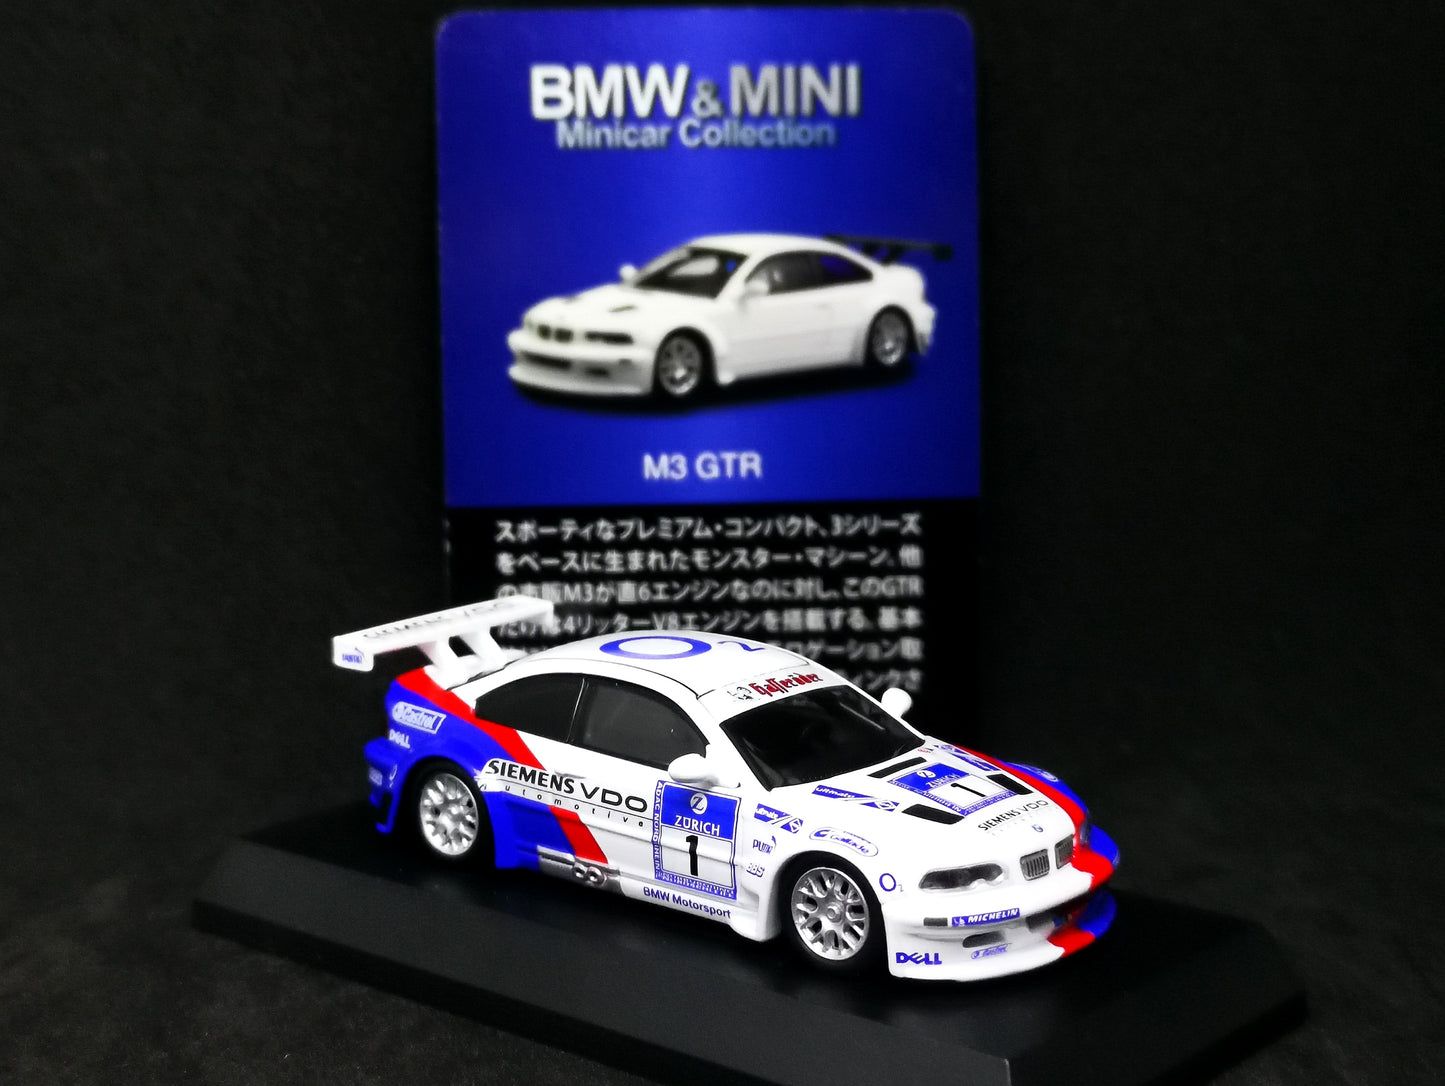 Kyosho 1:64 BMW & MINI mini car collection M3 GTR